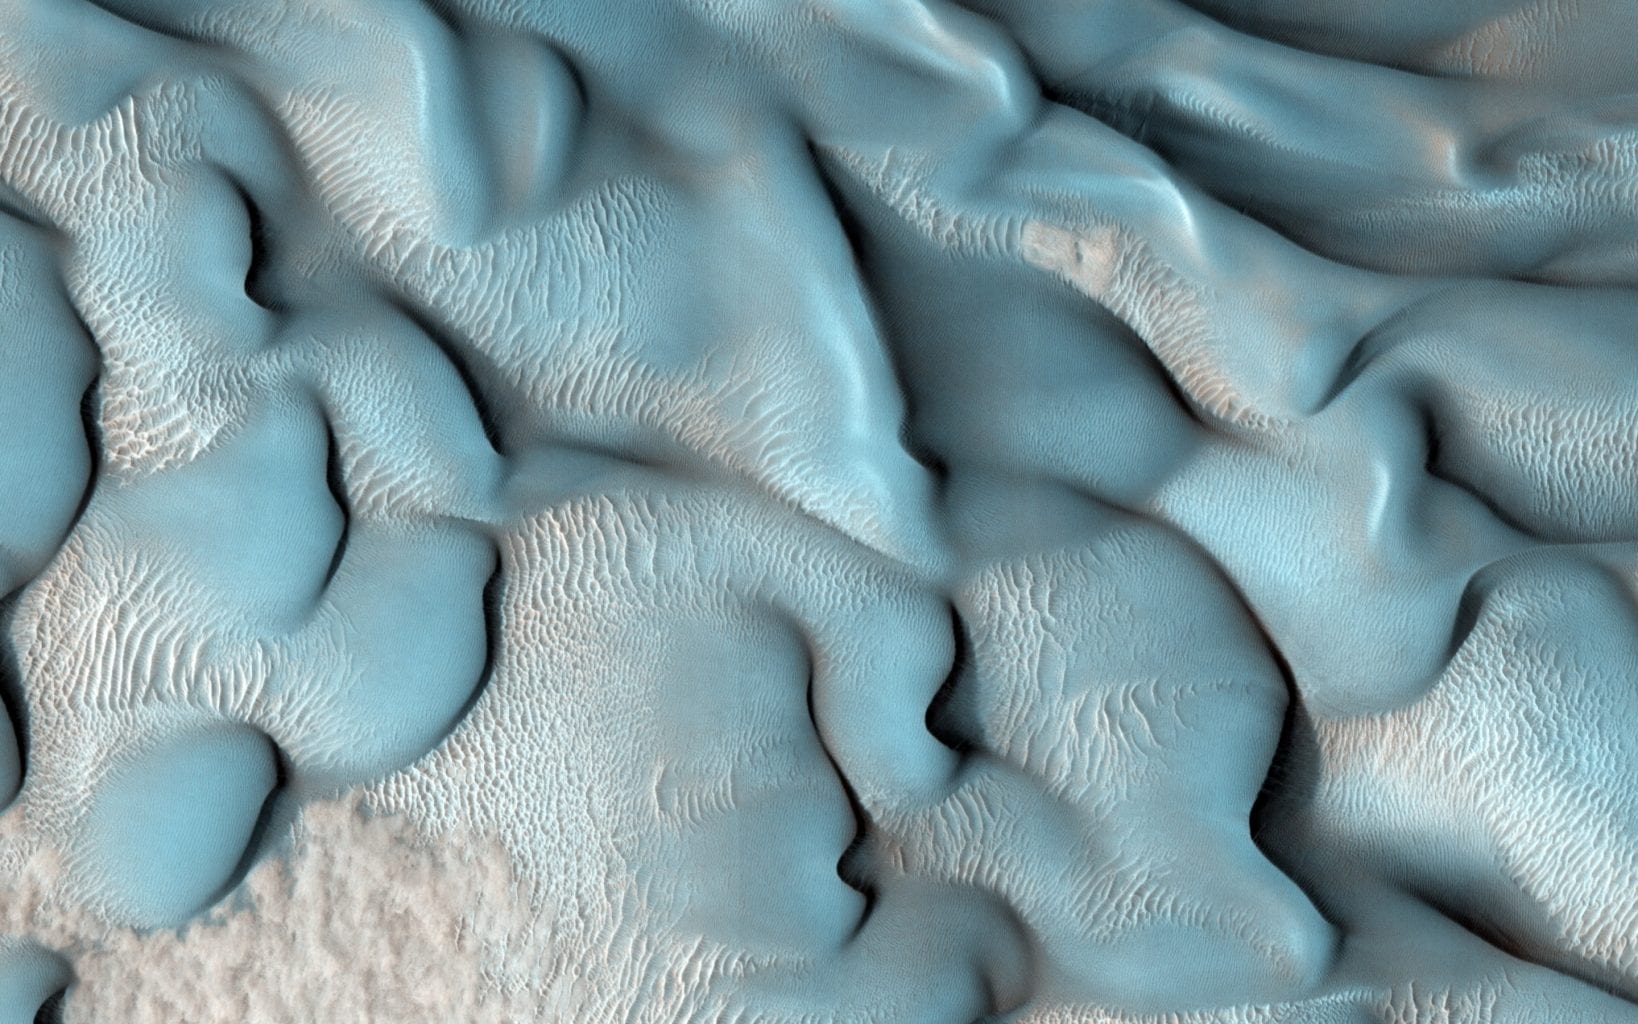 Это изображение MRO показывает множество дюн в кратере Лиот в северной низменности Марса. Предоставлено: НАСА / Лаборатория реактивного движения / Университет Аризоны.